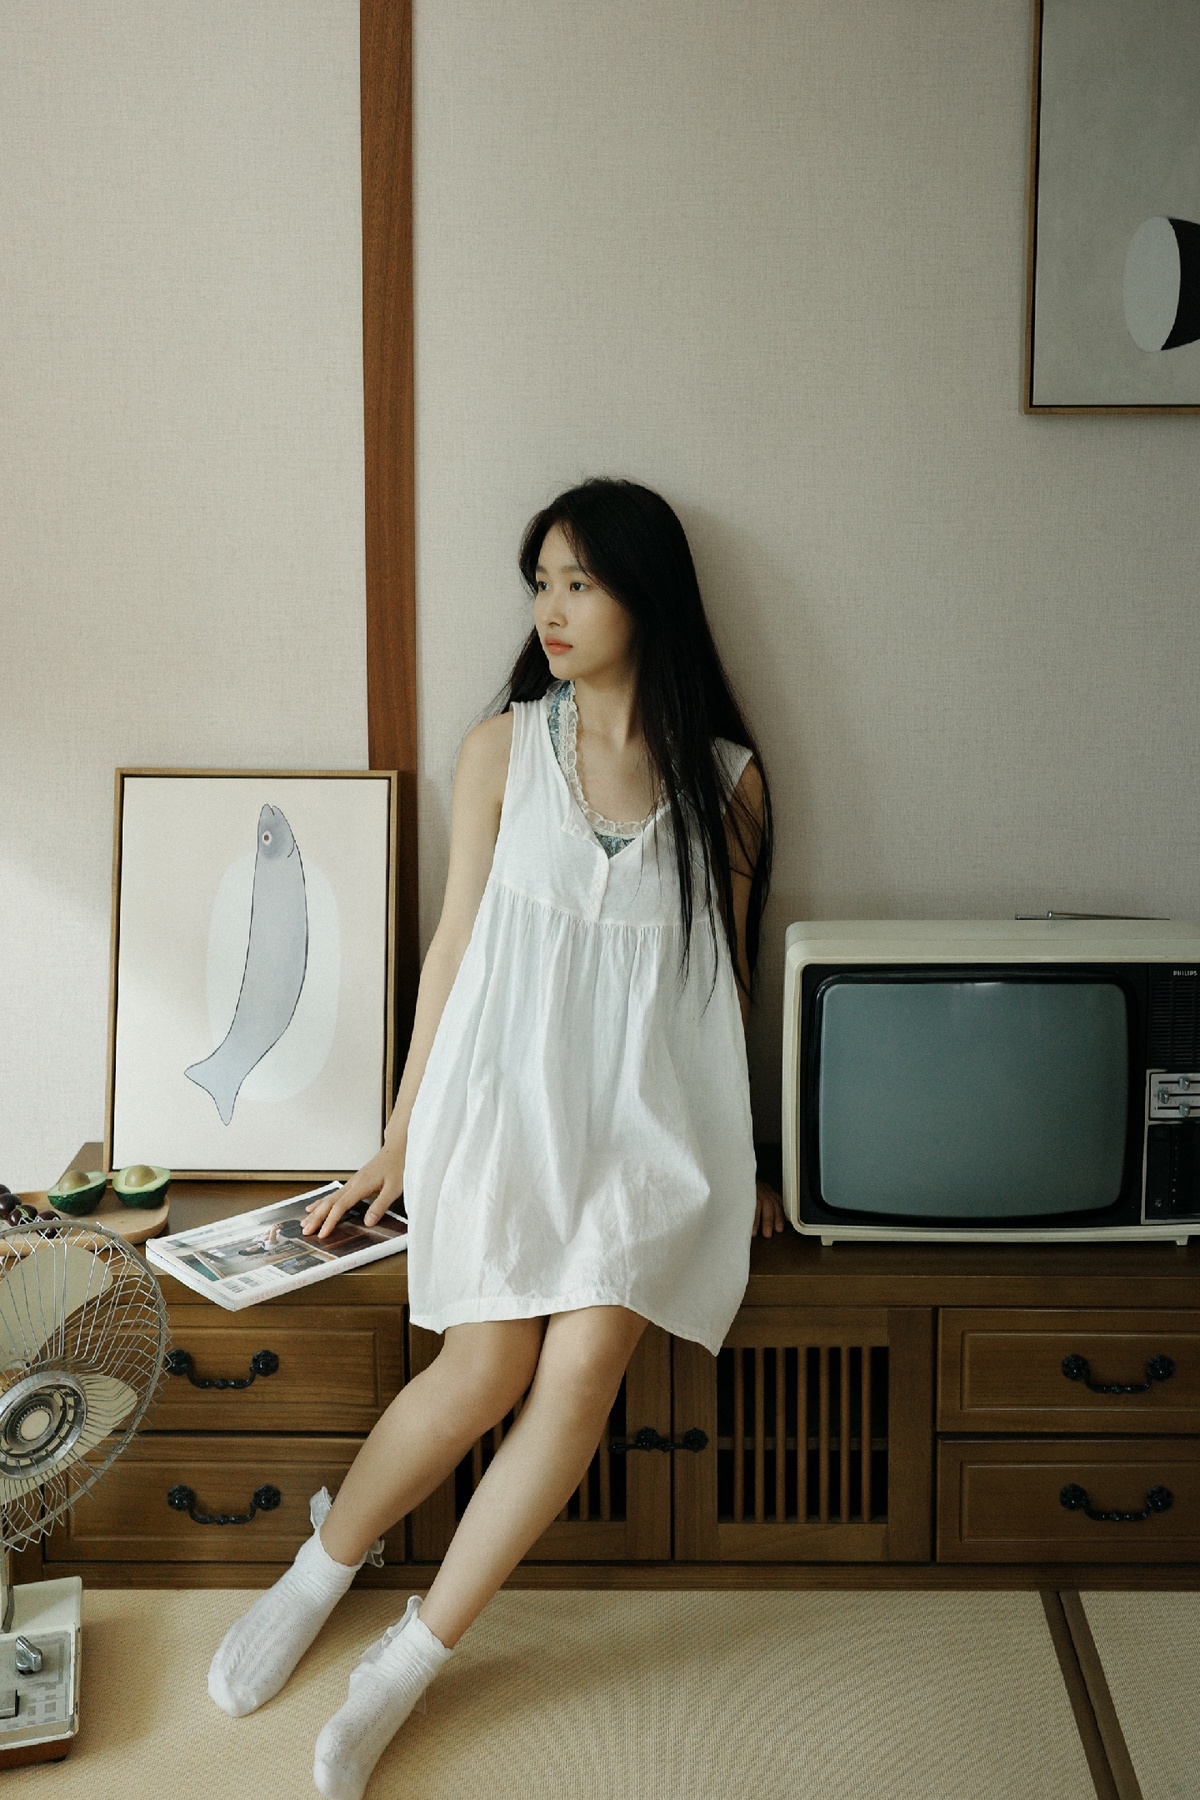 一个穿着白色连衣裙的年轻女子站在一个有电视和扇子的房间里